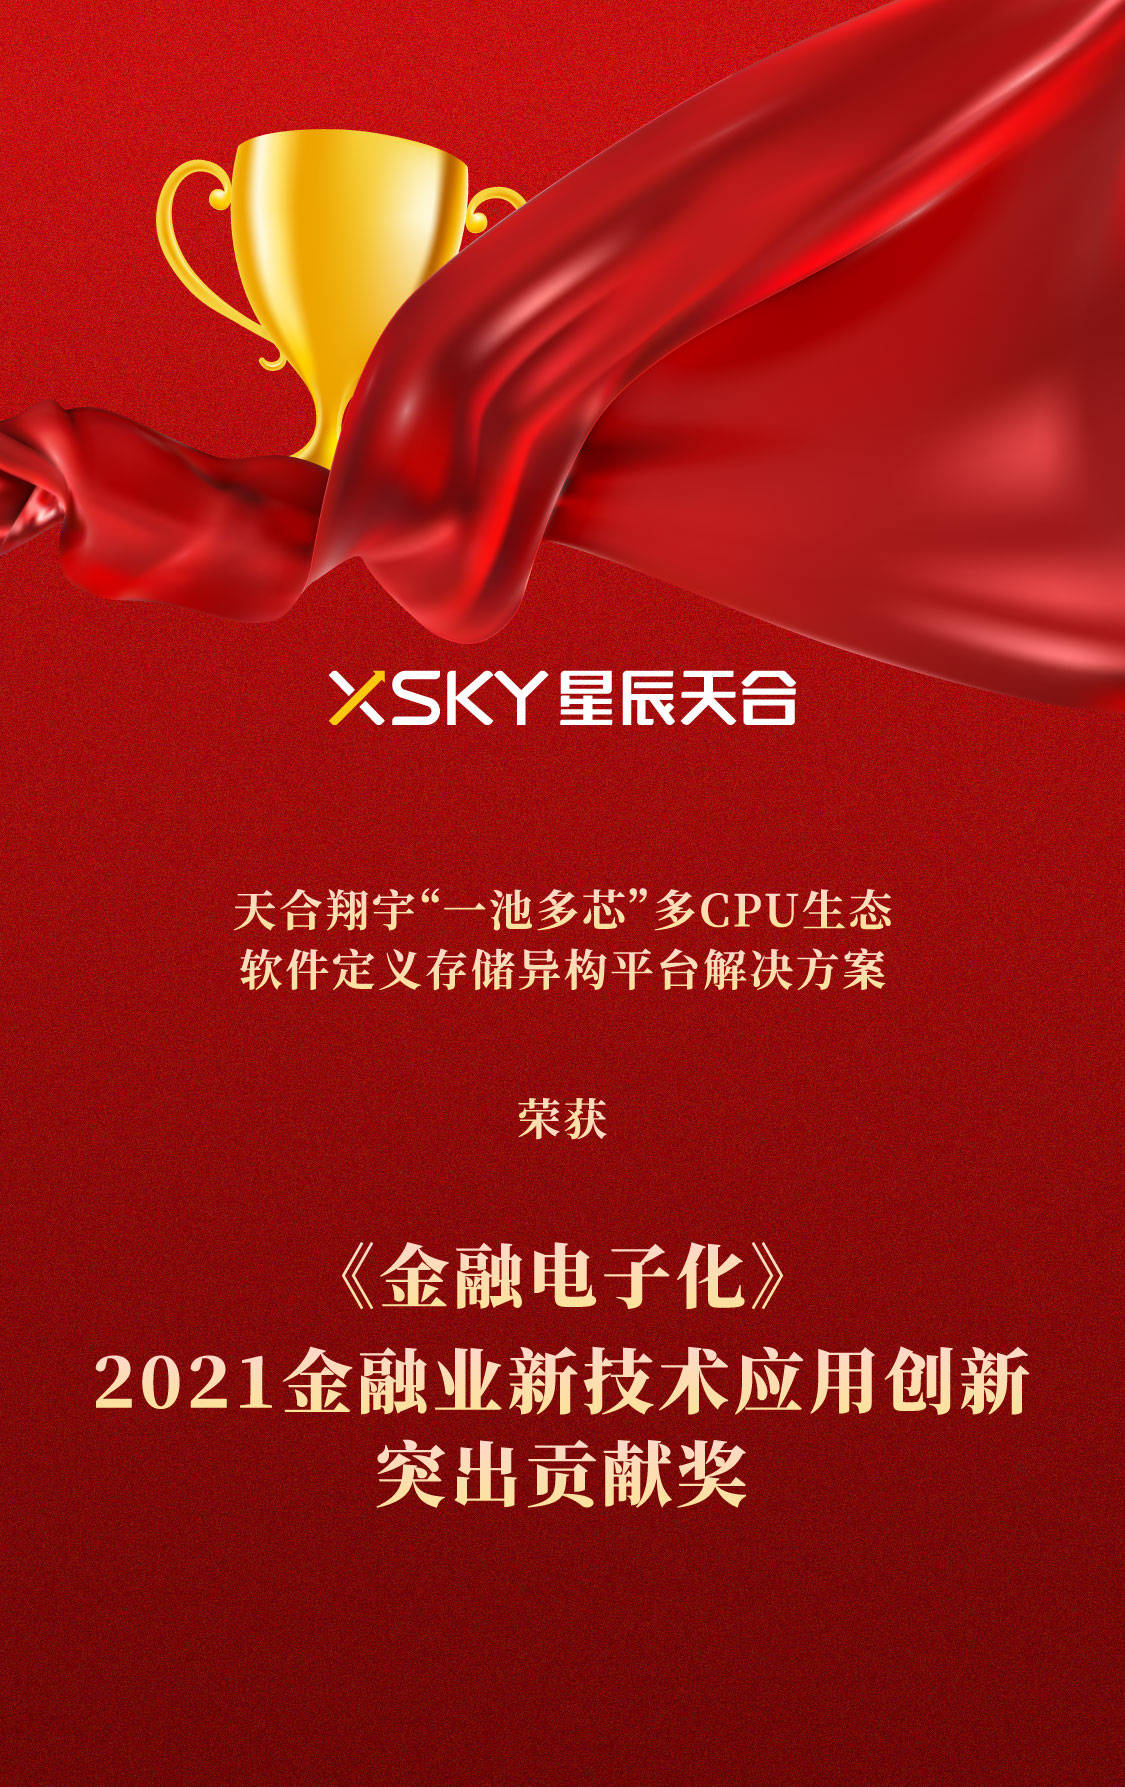 XSKY星辰天合问鼎 金融电子化 2021金融业新技术应用创新突出贡献奖